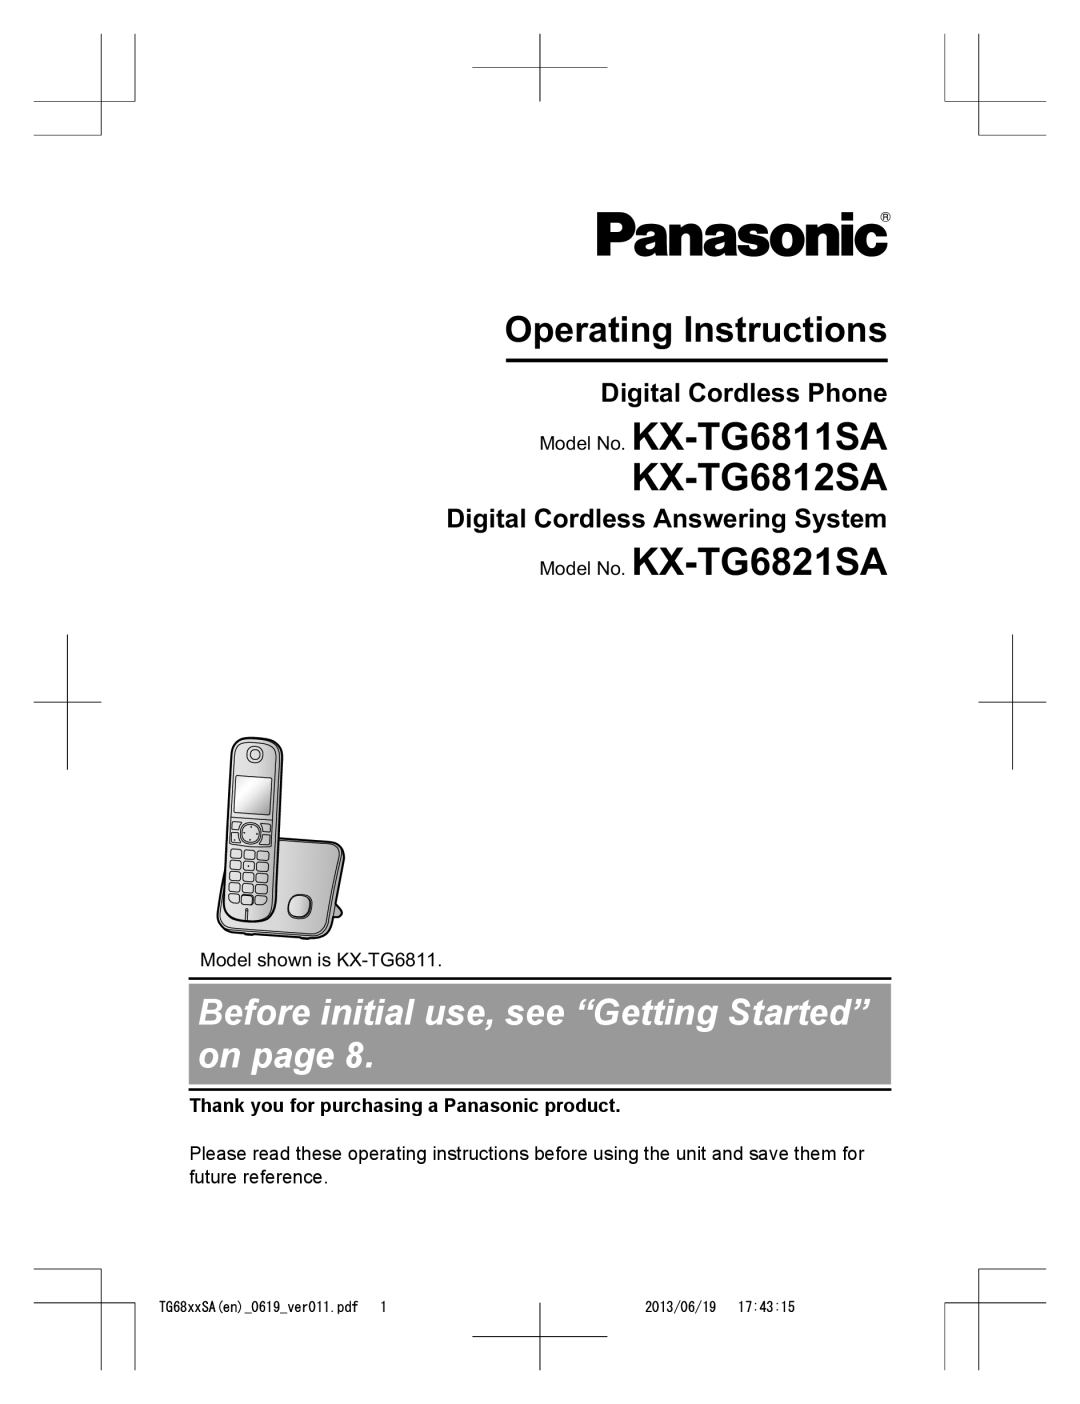 Panasonic KX-TG6811SA operating instructions Digital Cordless Phone, Digital Cordless Answering System, 2013/06/19 